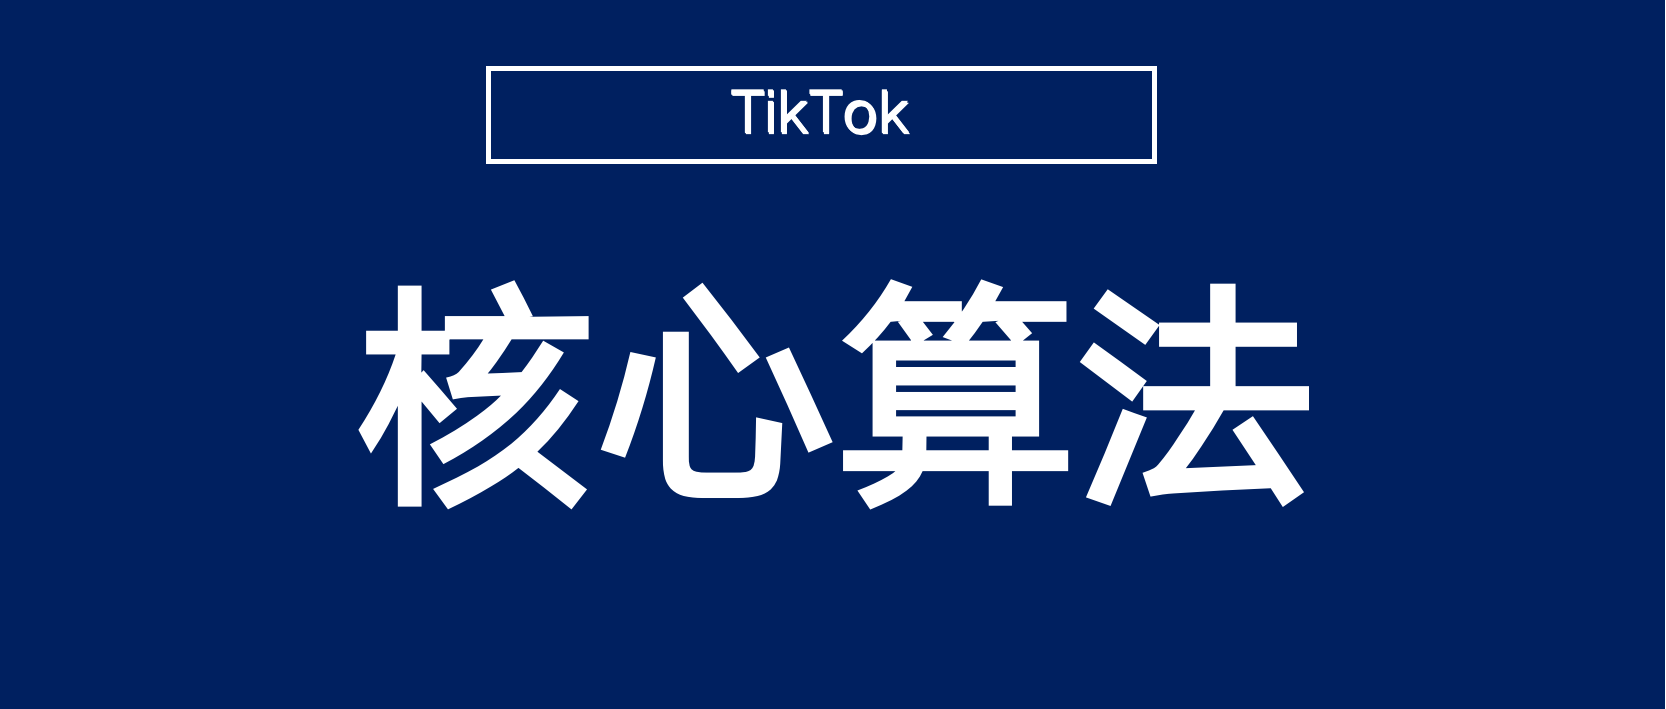 做TikTok必须了解的视频作品核心推荐算法和底层逻辑